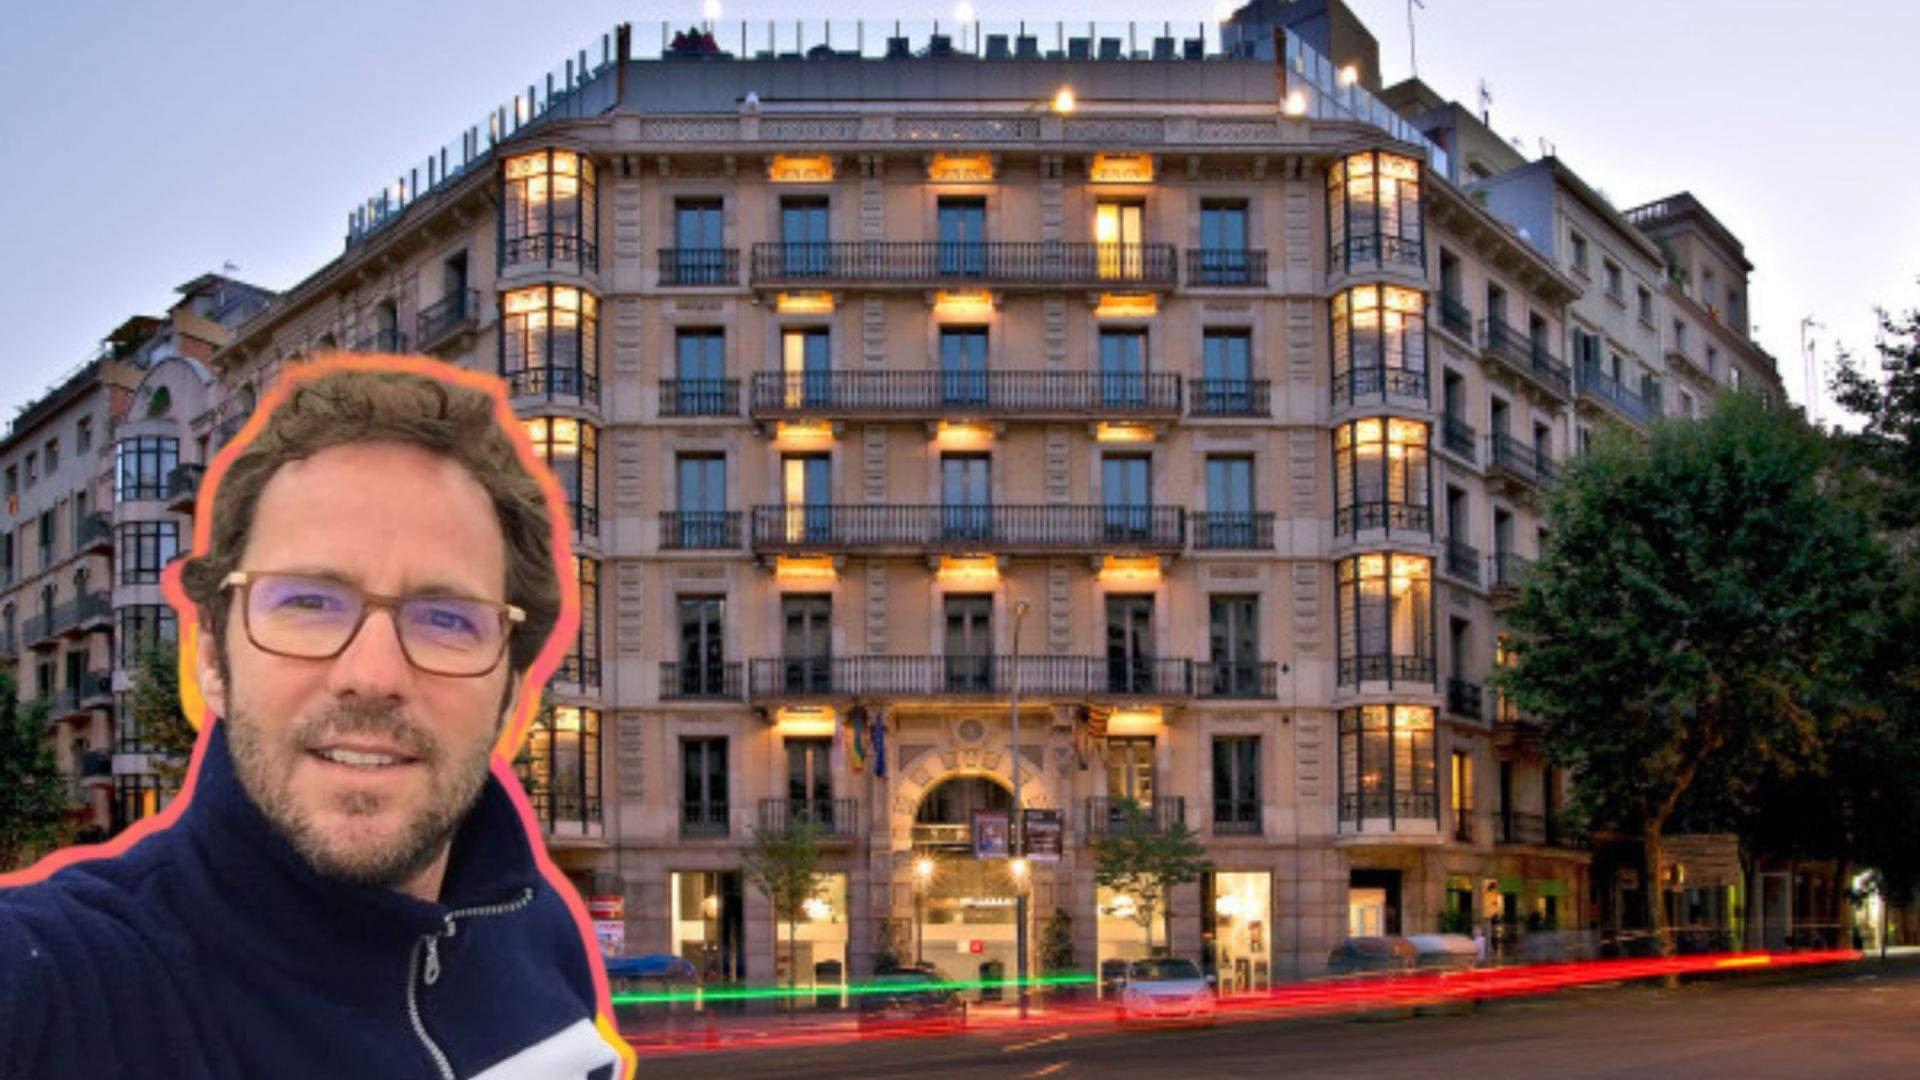 Axel obrirà dos nous hotels LGTBIQ+friendly aquest estiu a València i Bilbao